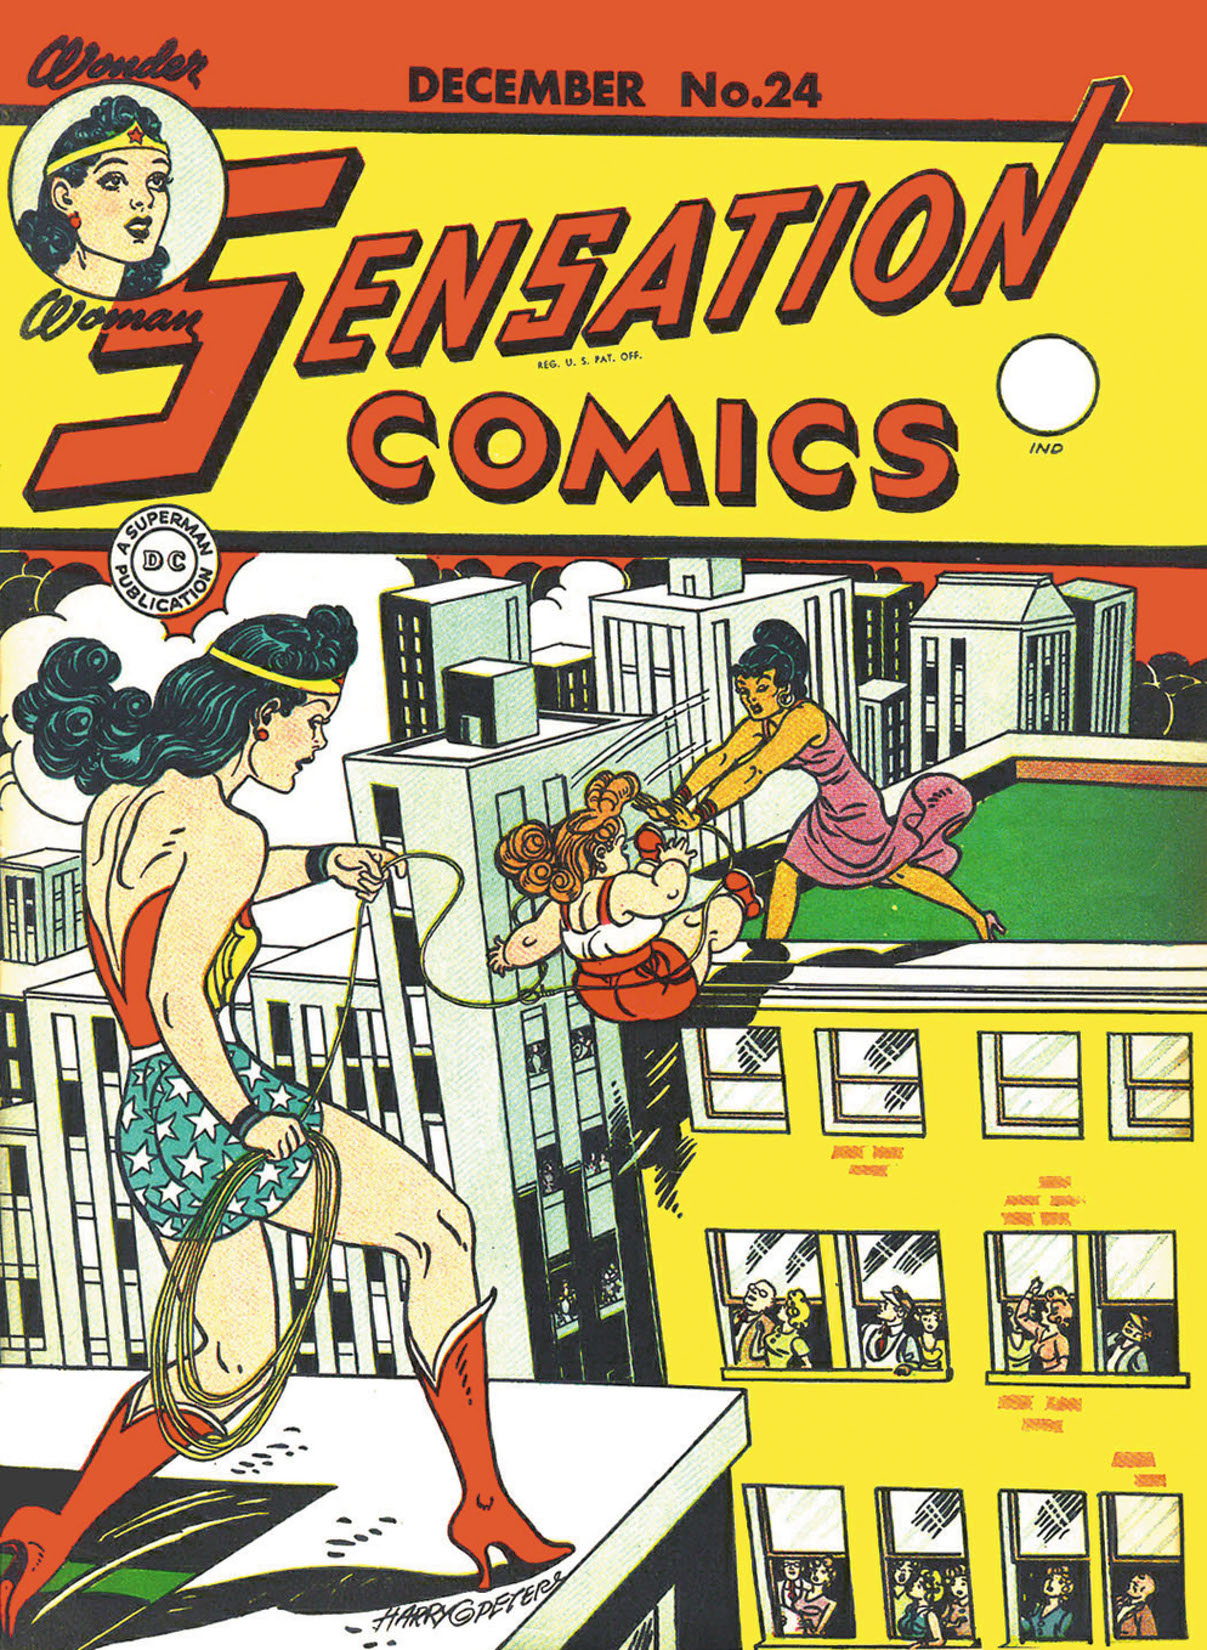 Sensation Comics #24 preview images